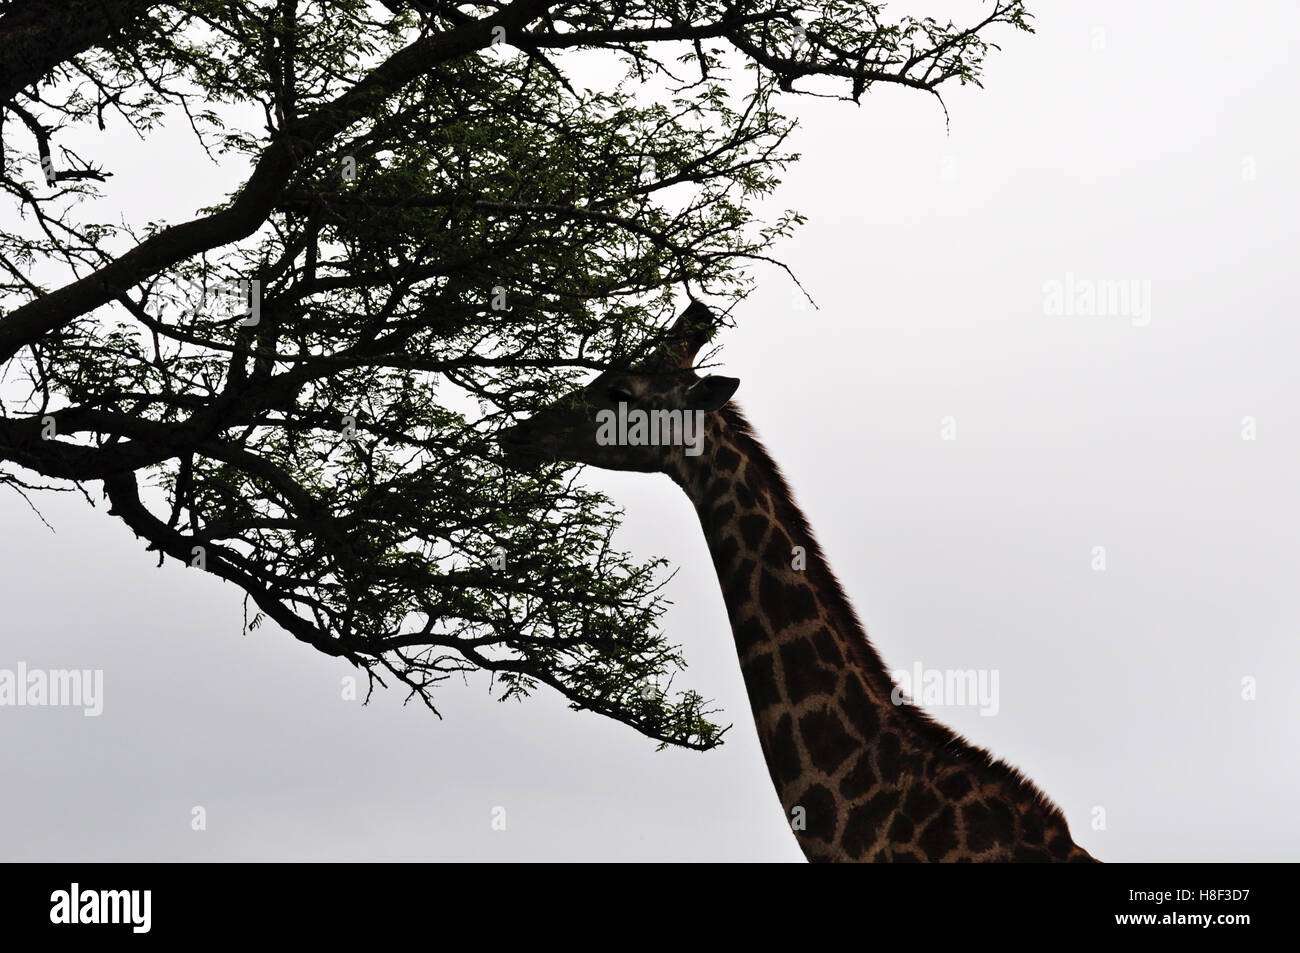 Safari in Südafrika: eine Giraffe füttern in Hluhluwe Imfolozi Game Reserve, das älteste Naturschutzgebiet in Afrika seit 1895 Stockfoto